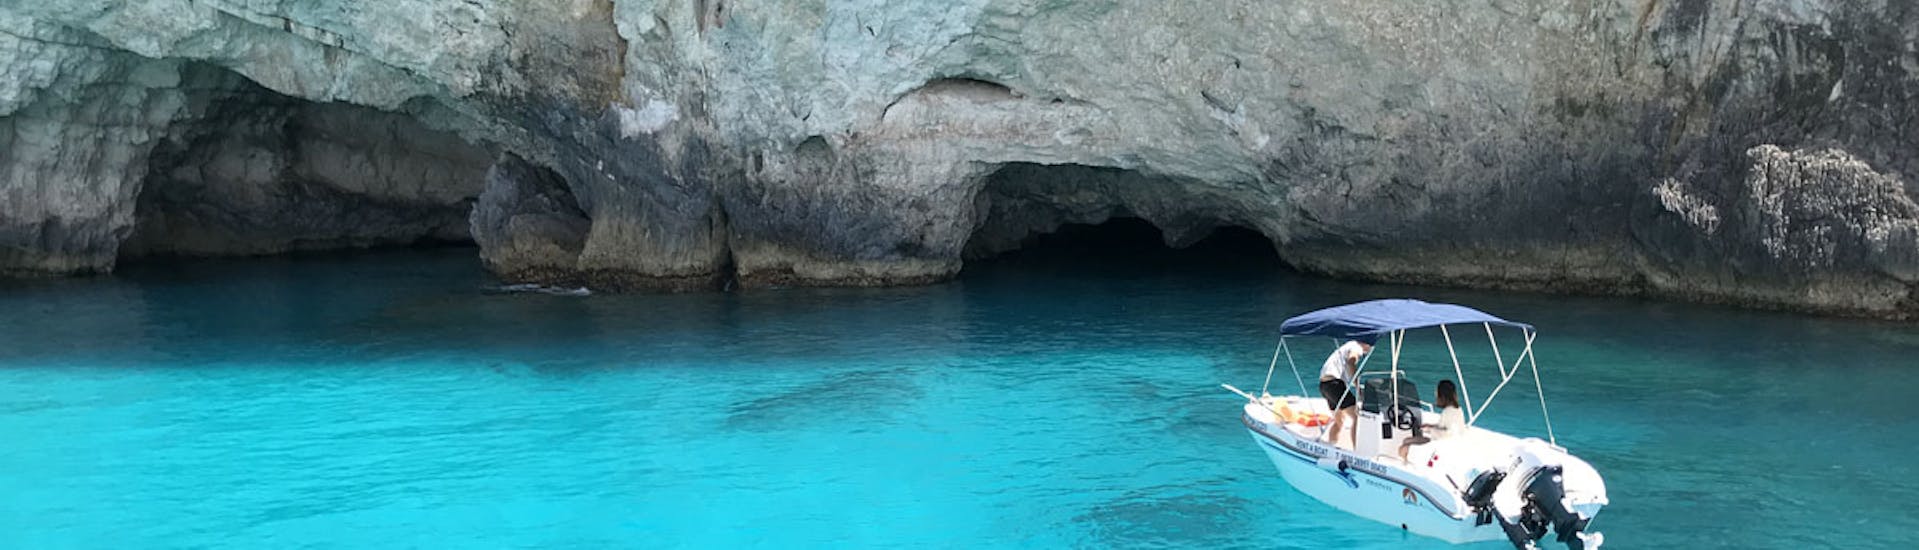 Location de bateau à Porto Vromi (jusqu'à 7 personnes) avec Porto Vromi Maries Zakynthos, ancré devant de petites grottes.